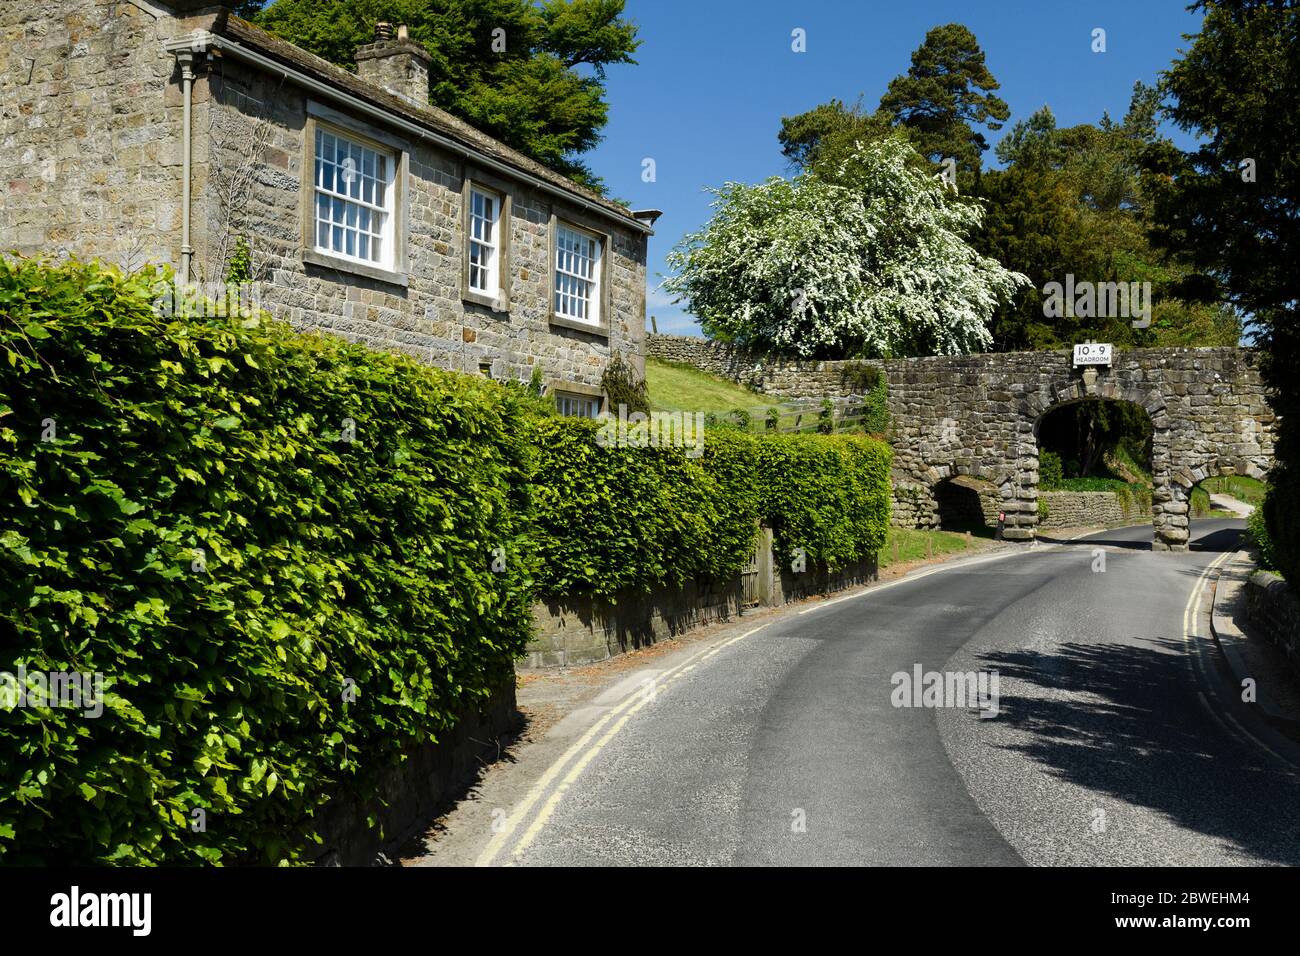 Country Lane, Cottage, arcade en pierre (aqueduc historique, 3 arches, panneau d'avertissement de la tête 10' 9'') - B6160 Bolton Abbey village, Yorkshire, Angleterre, Royaume-Uni Banque D'Images